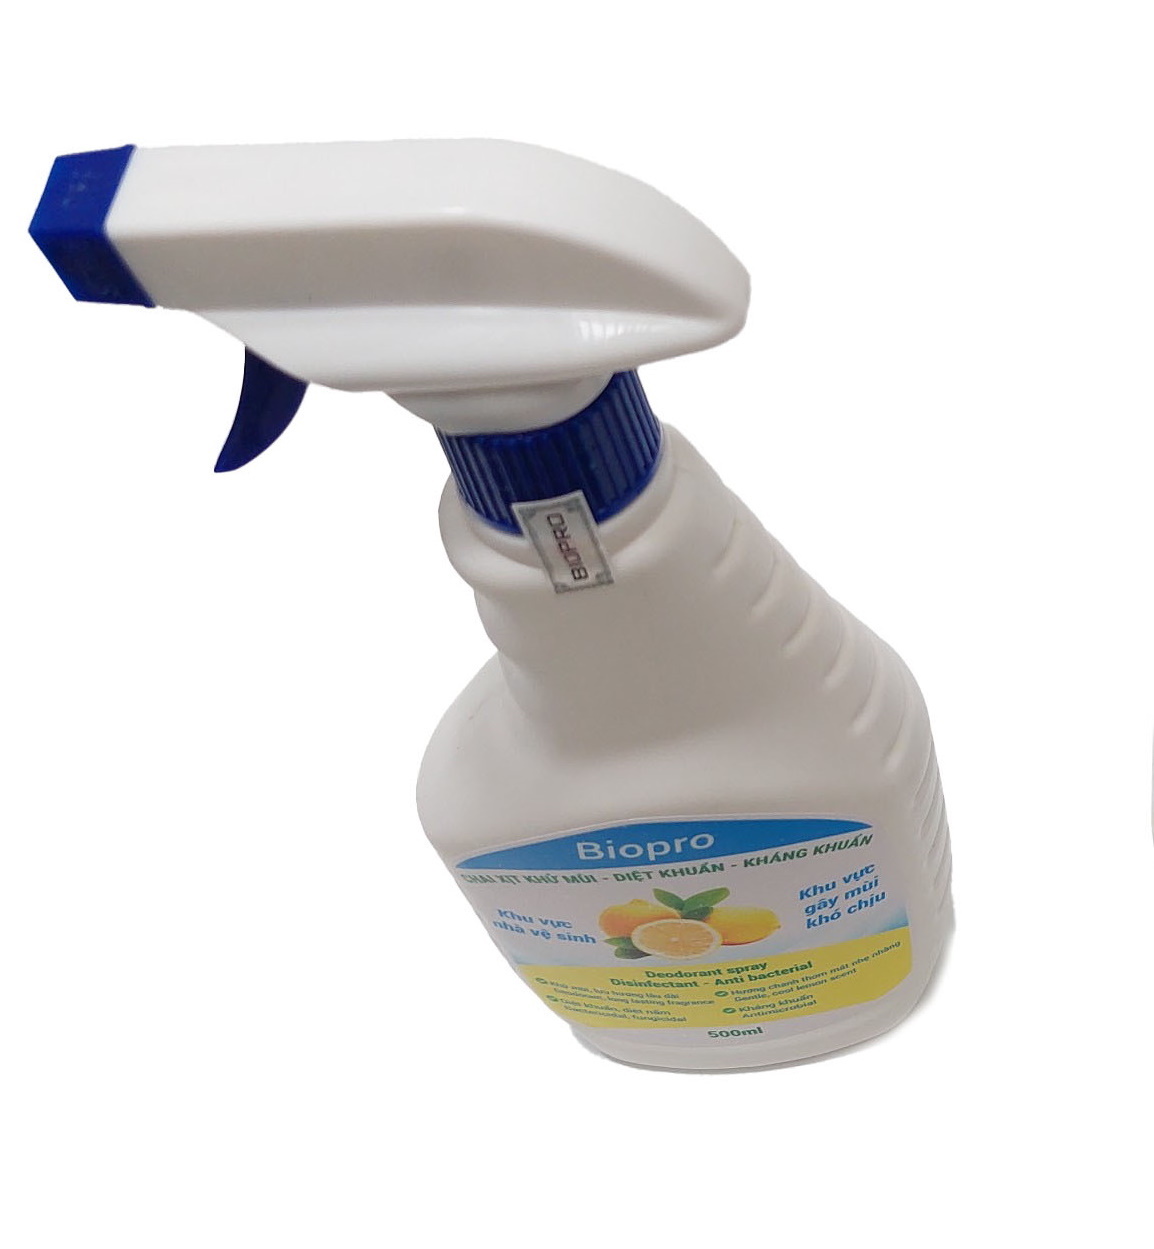 Chai xịt Biopro 500ml khử mùi diệt khuẩn kháng khuẩn Khu vực gây mùi khó chịu Khu vực nhà vệ sinh Hương chanh thơm mát